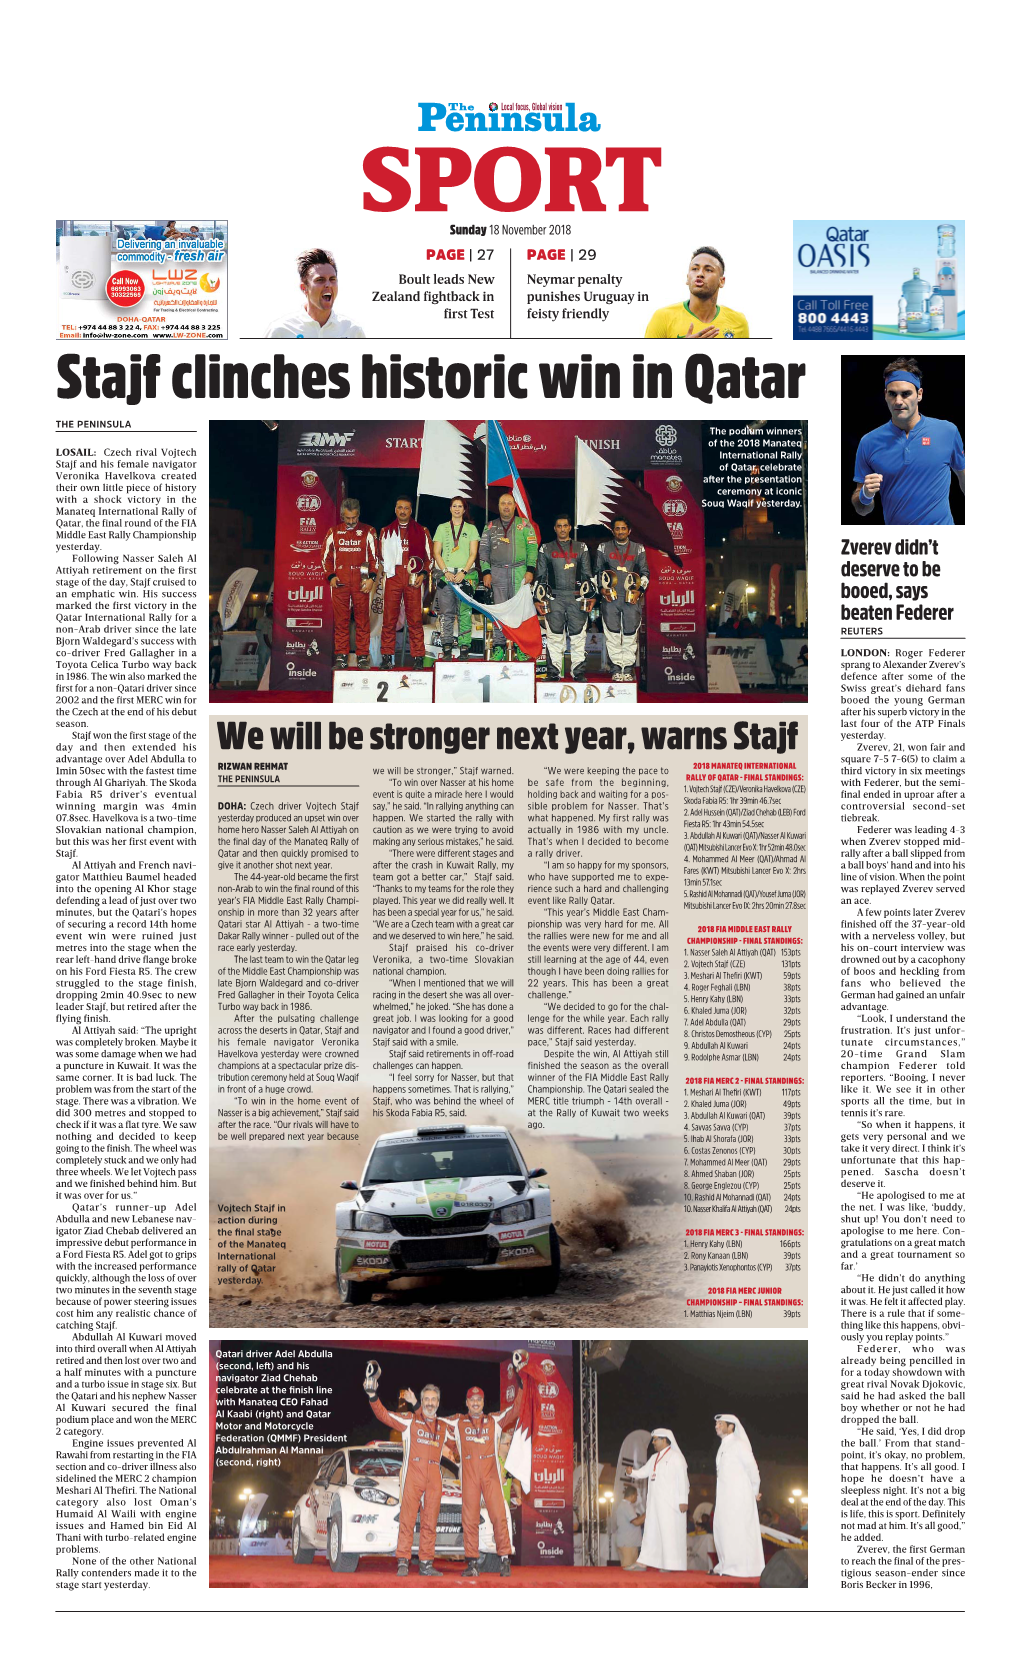 Stajf Clinches Historic Win in Qatar